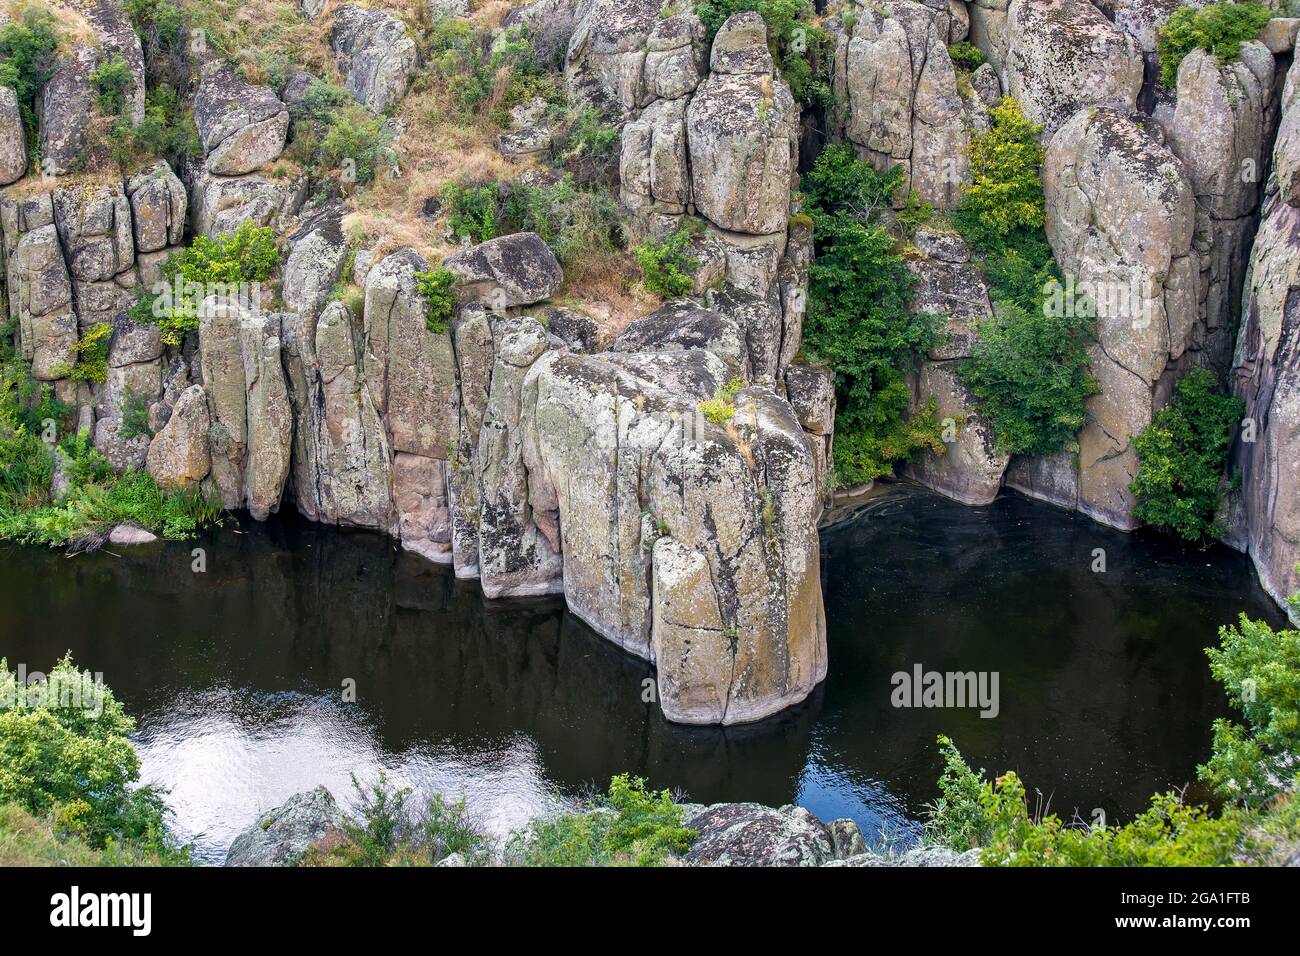 Bergfluss in einer Schlucht mit Steinklippen mit Bäumen Sommerlandschaft, Natur für Tourismus und Outdoor-Aktivitäten, niemand. Stockfoto